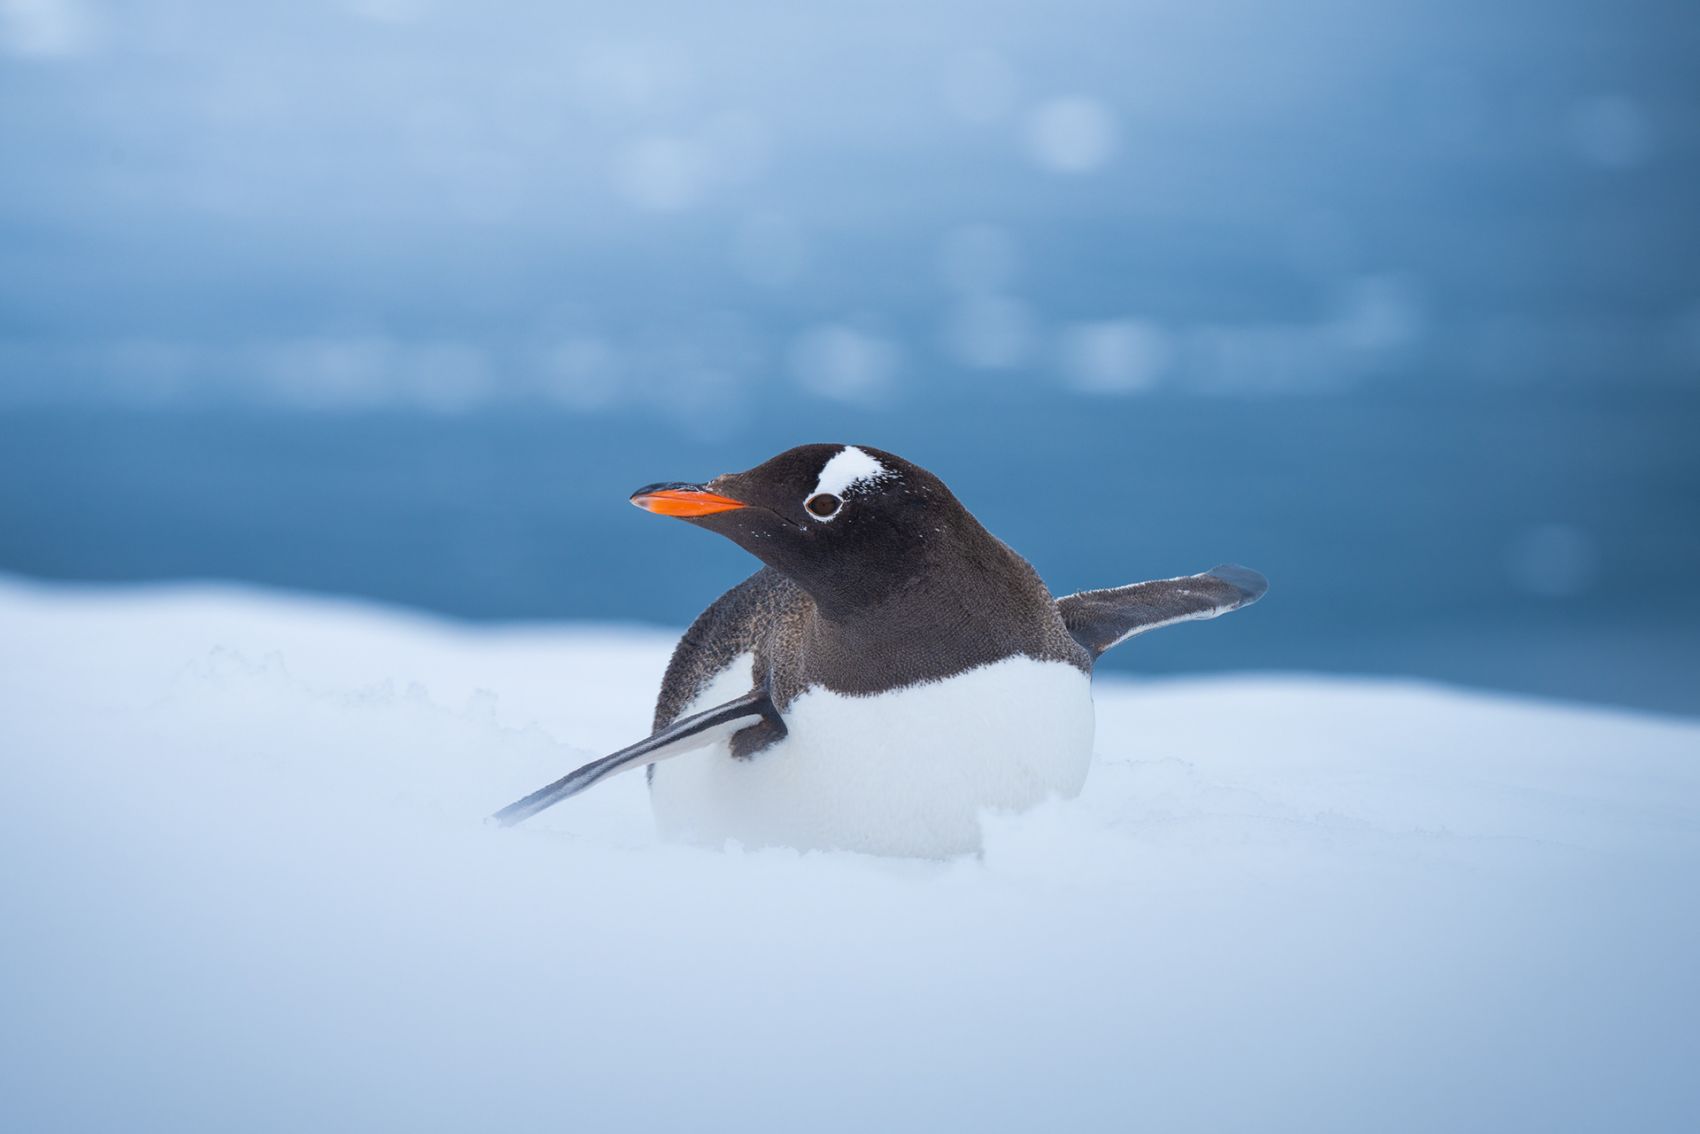 南极冰川的小企鹅 - 〖主题壁纸〗 - 飞扬社区